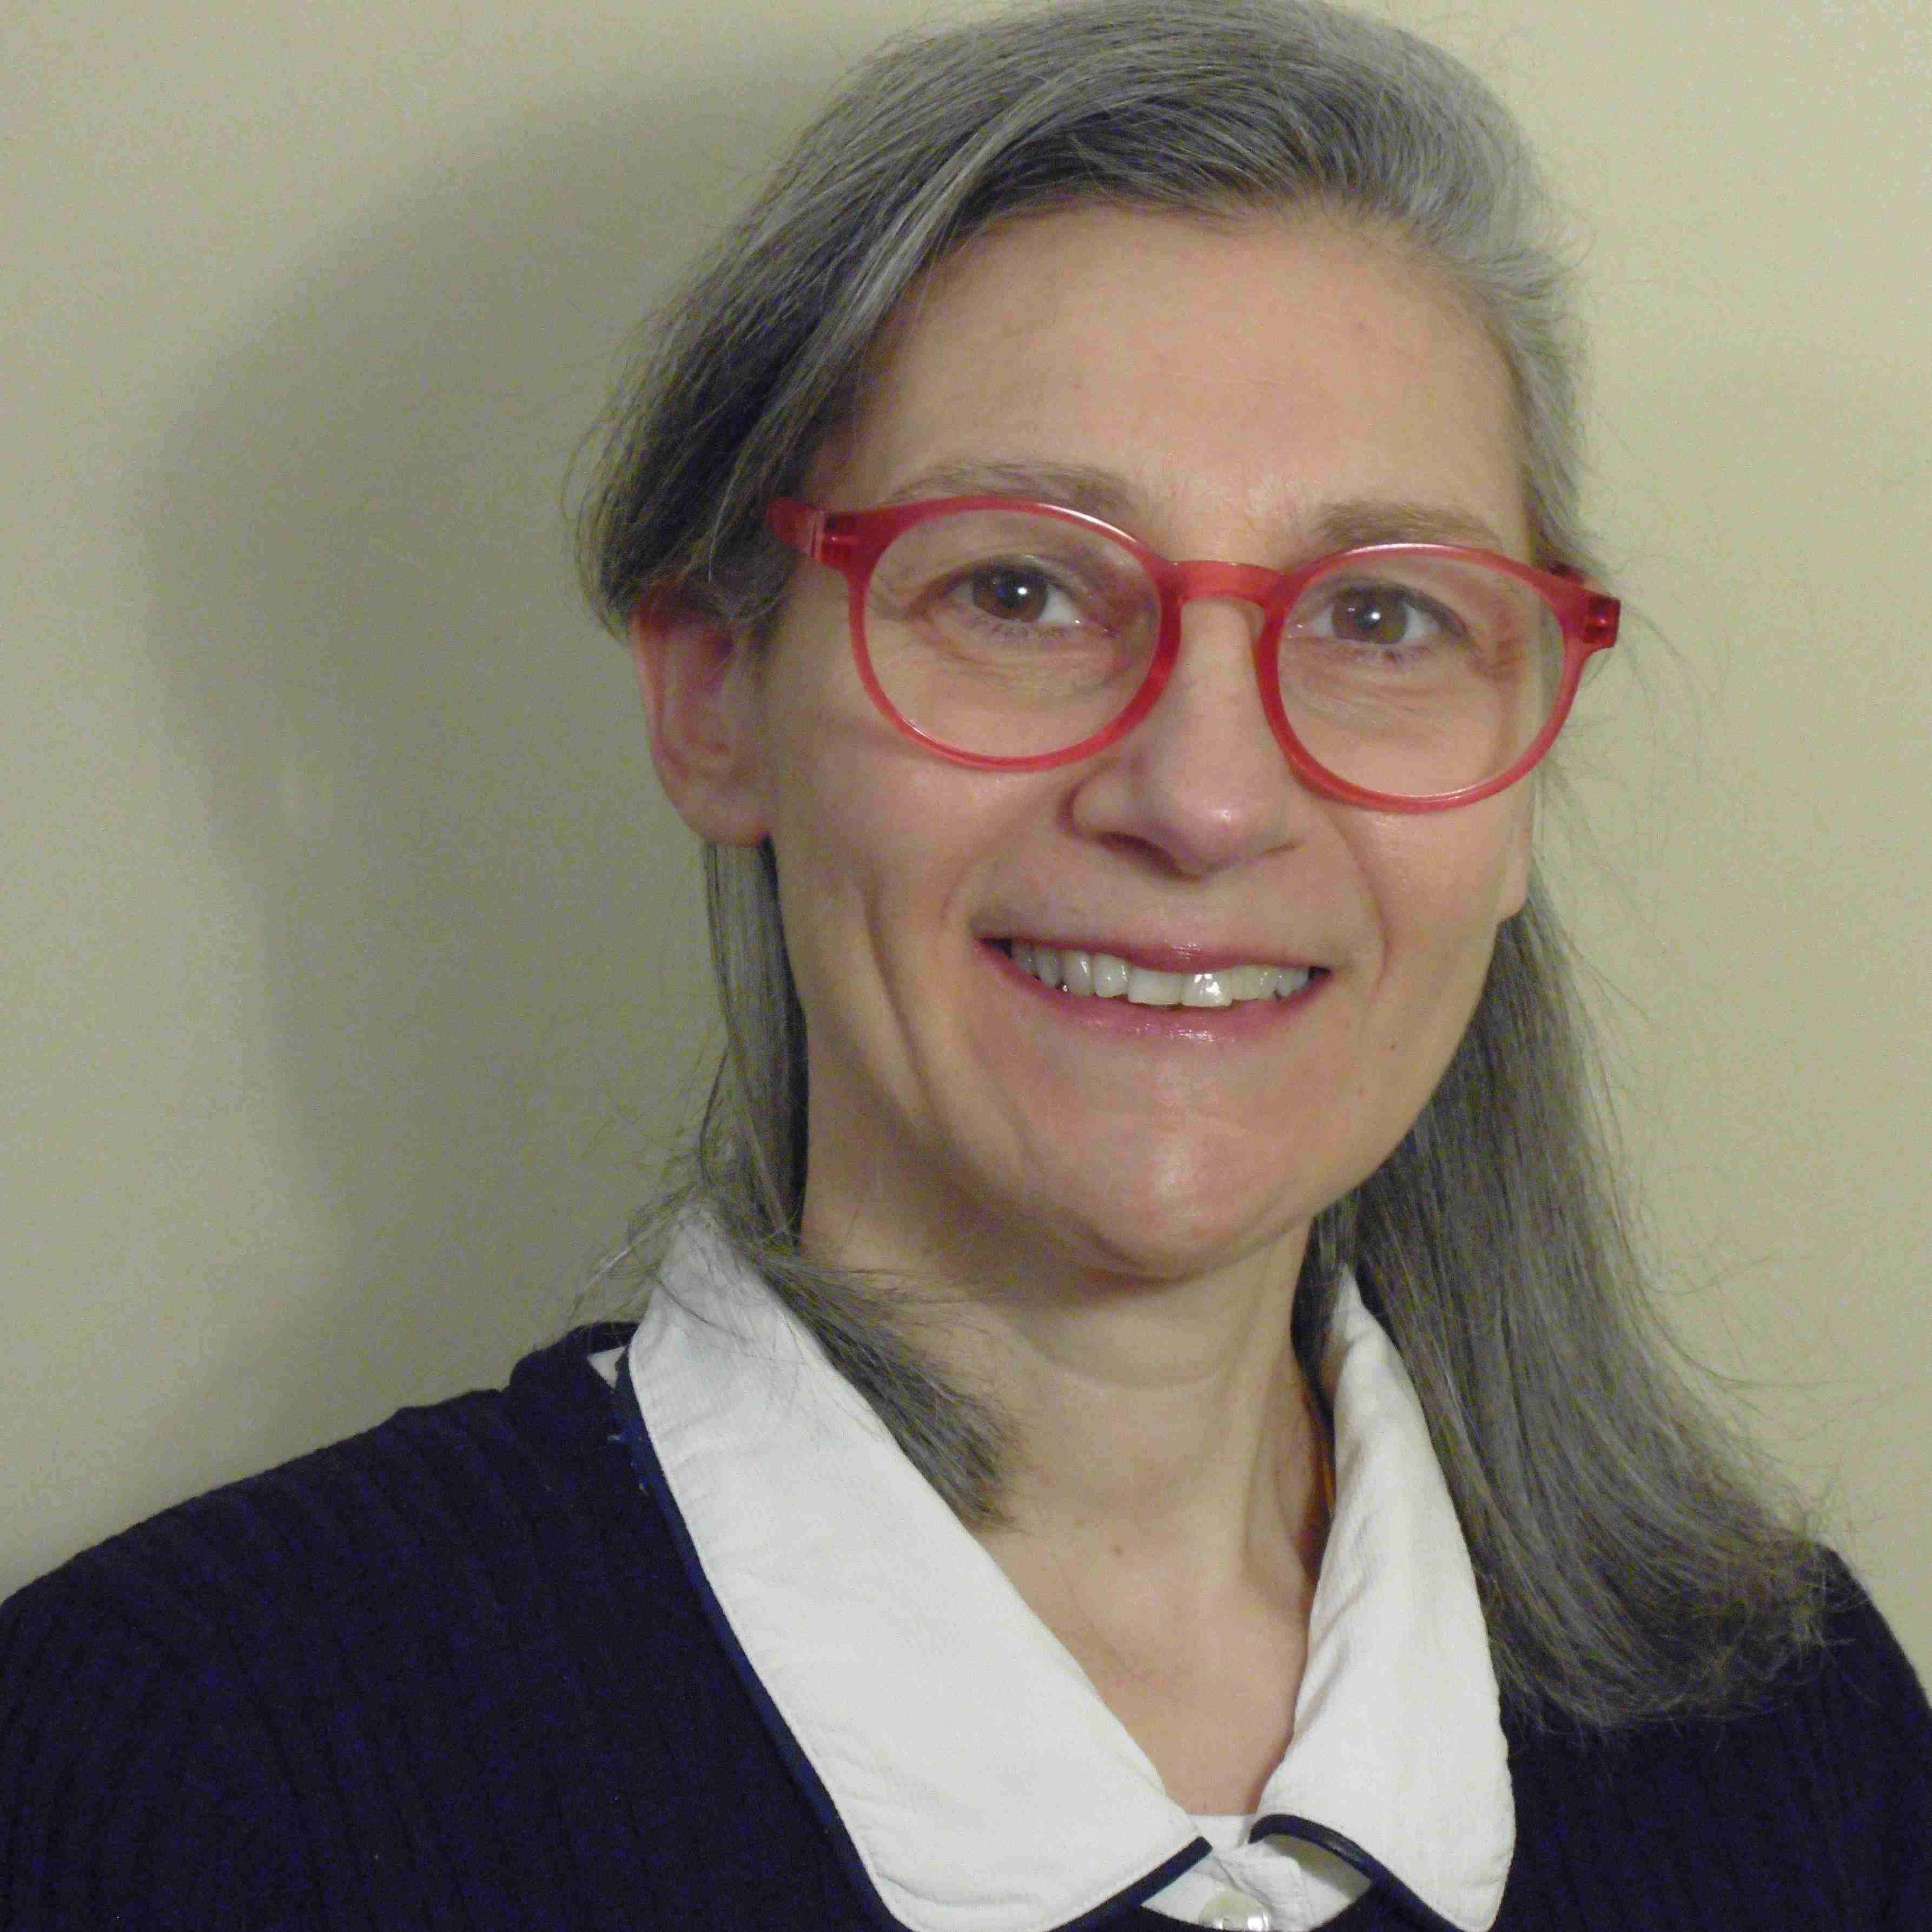 Profile image of Dr Maria Yioutani-Iacovides